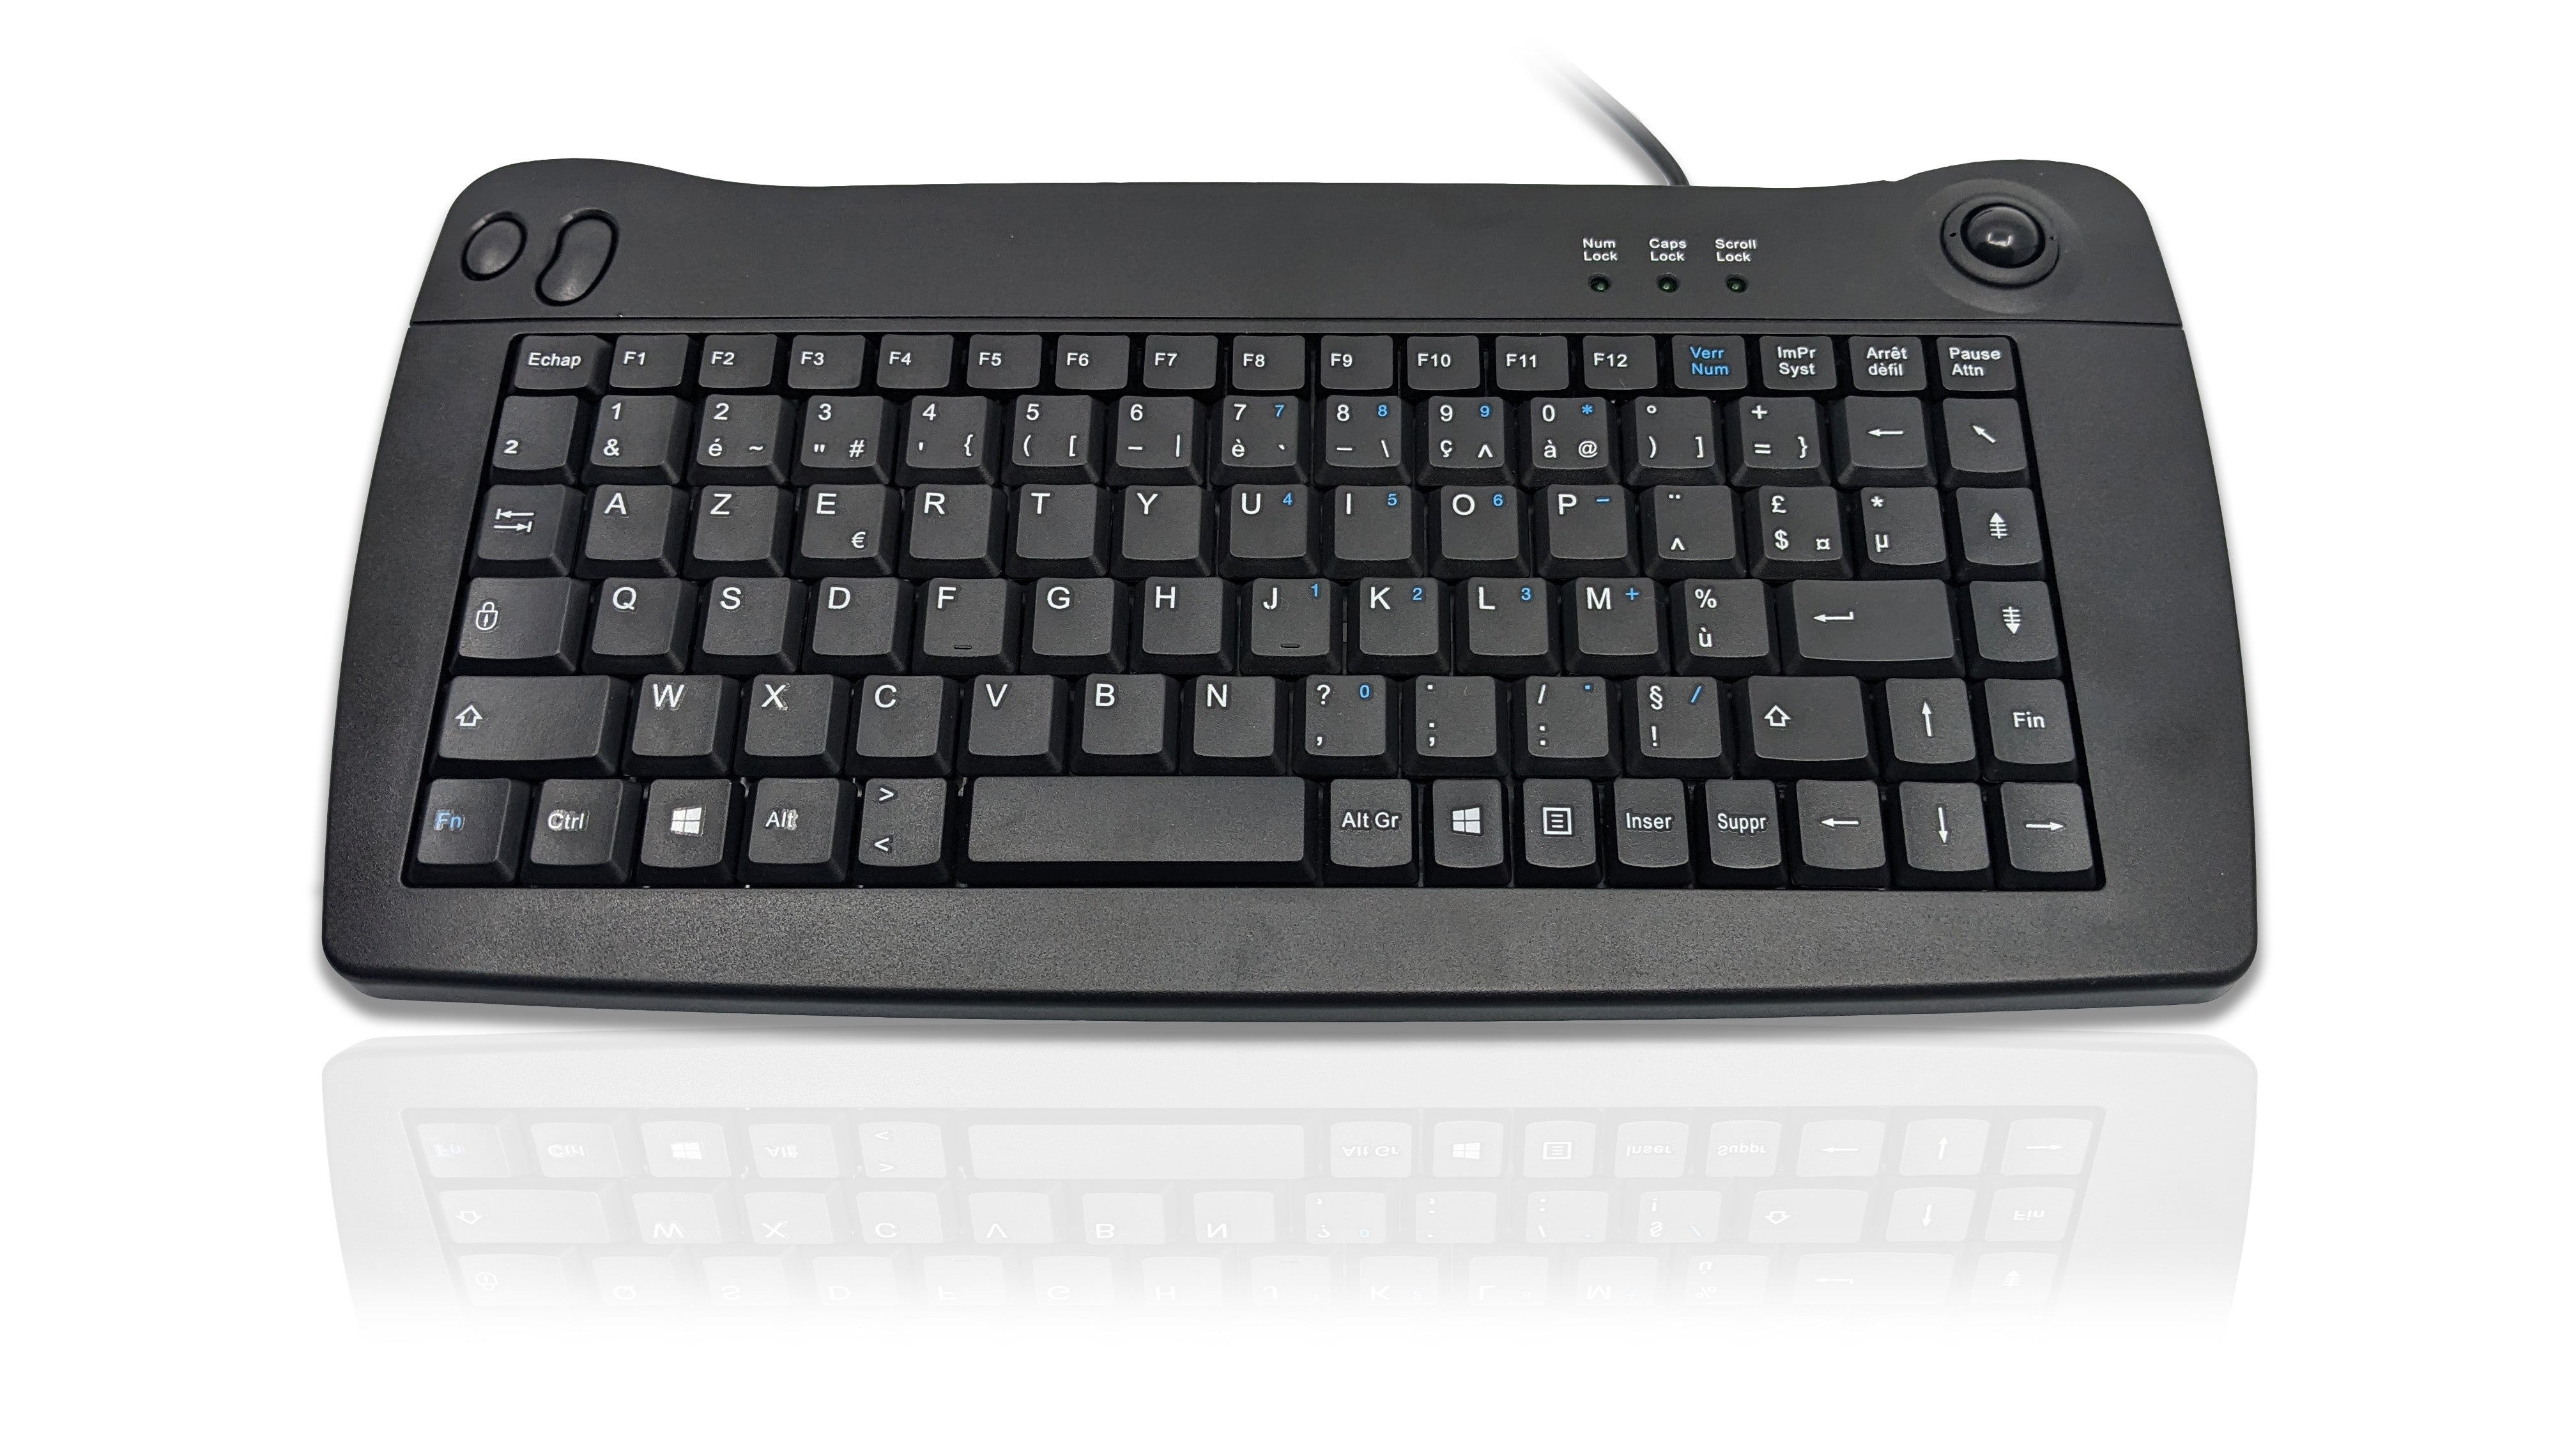 Accuratus 5010 - PS/2 Mini Keyboard with Trackball